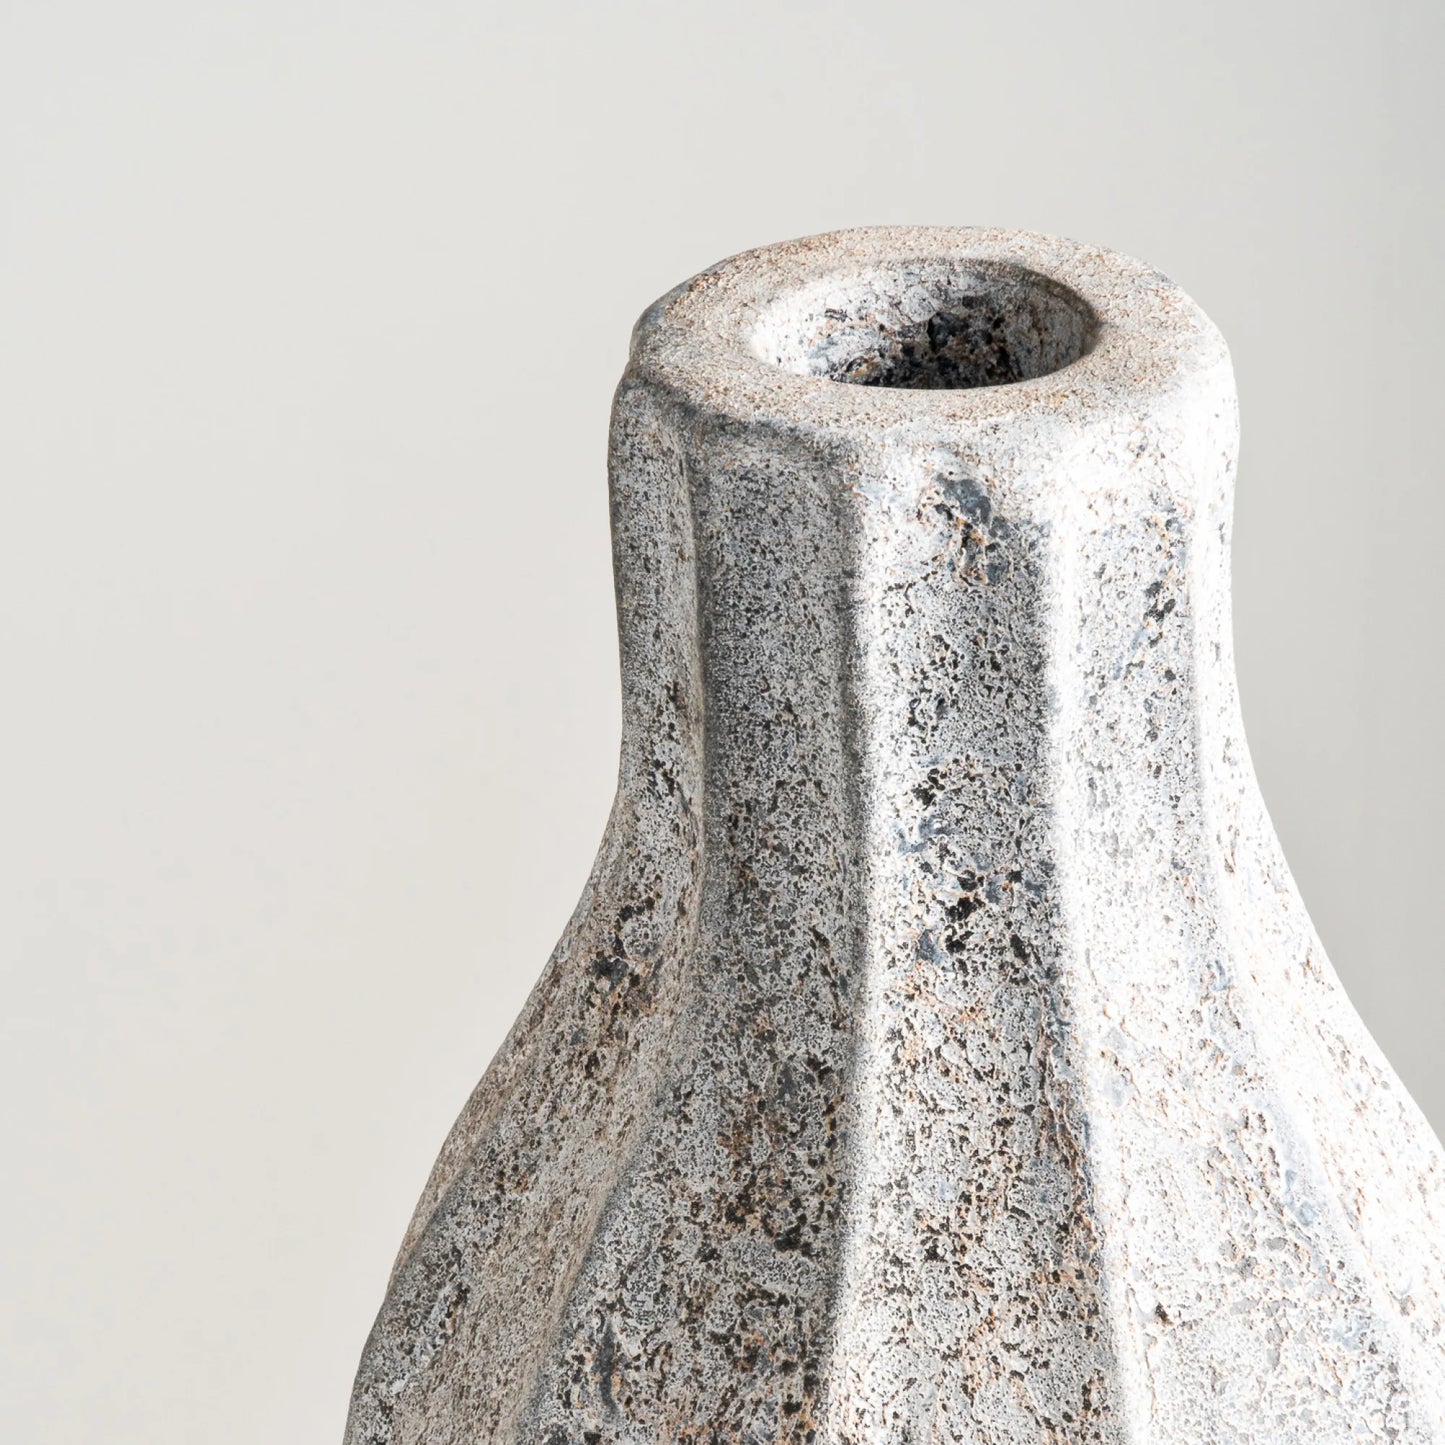 Lined Vase